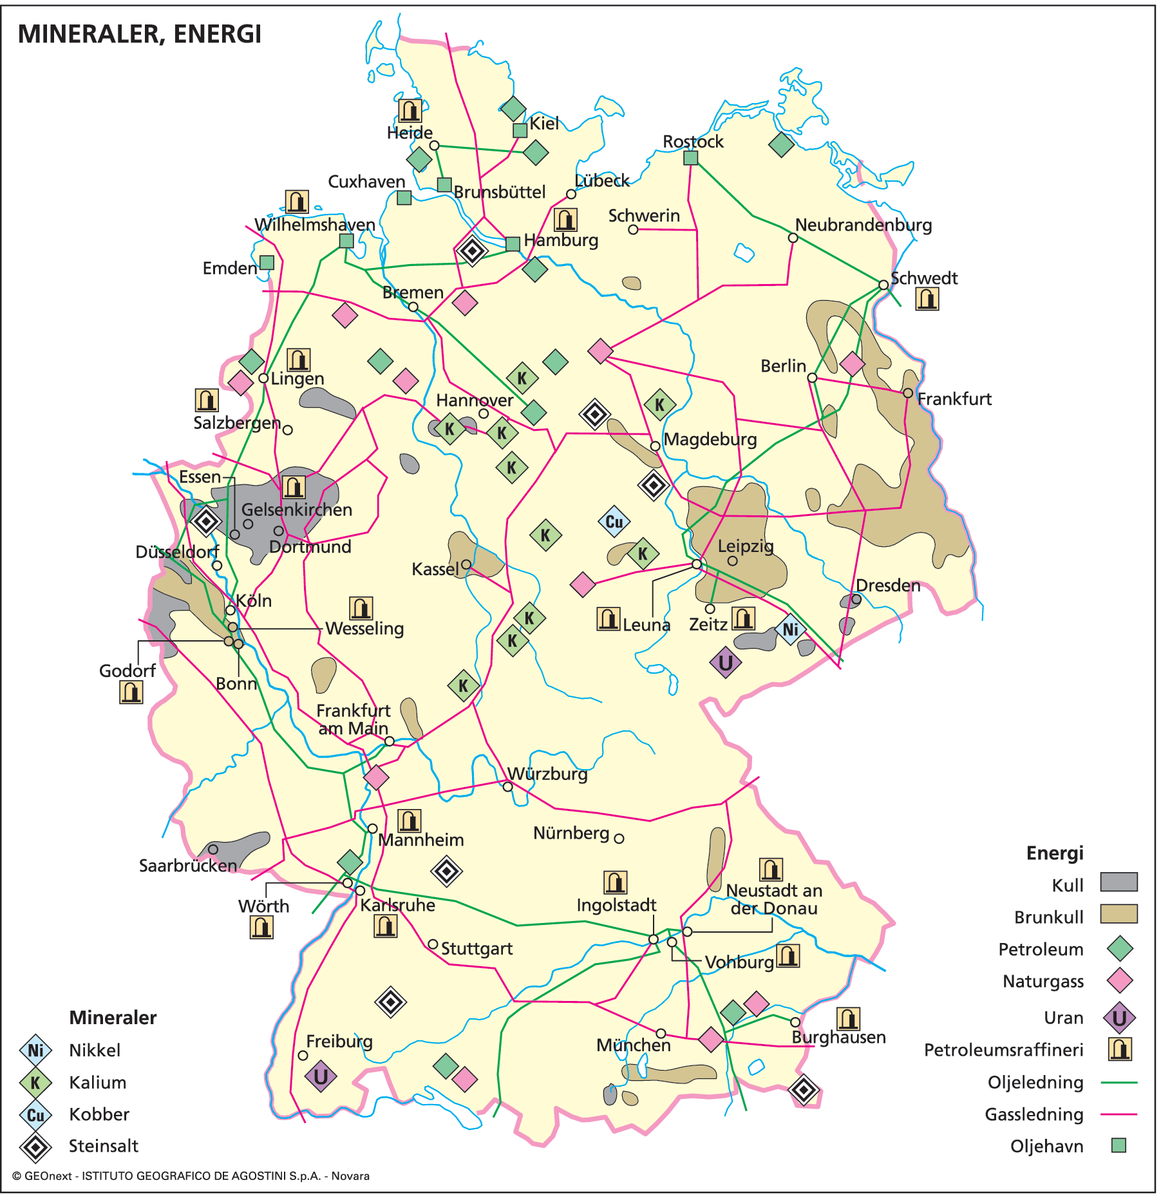 Tyskland, øk.kart mineraler osv.